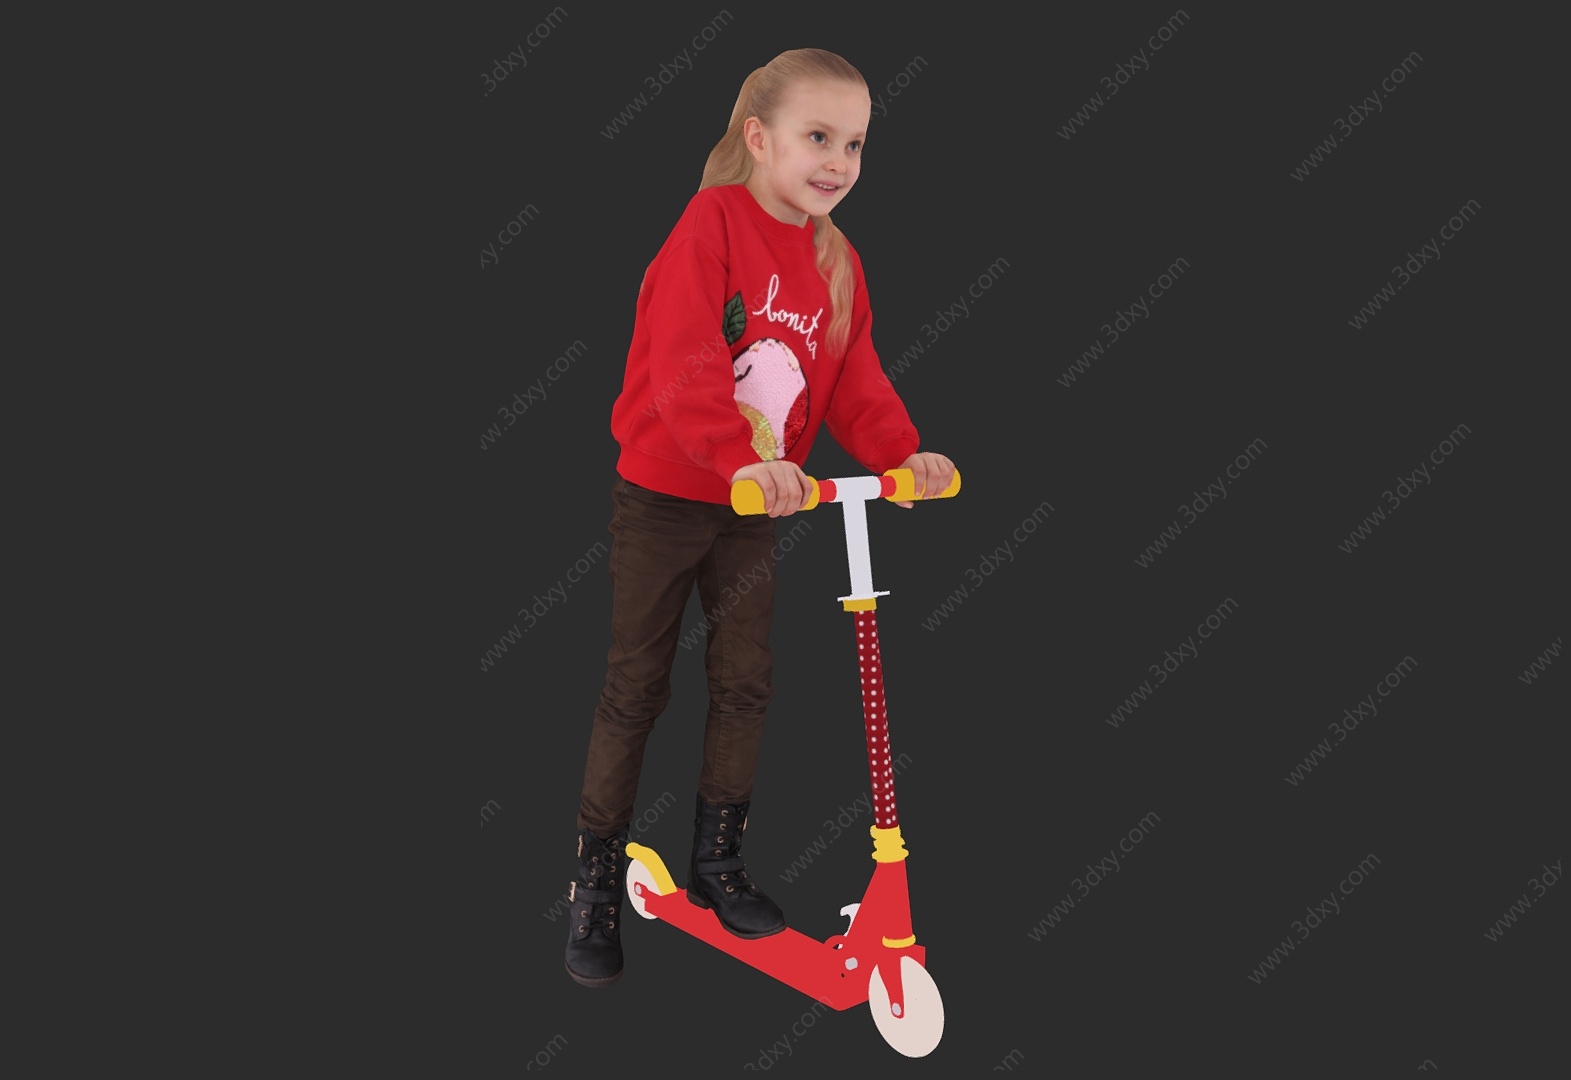 可爱小女孩玩滑板的女孩3D模型